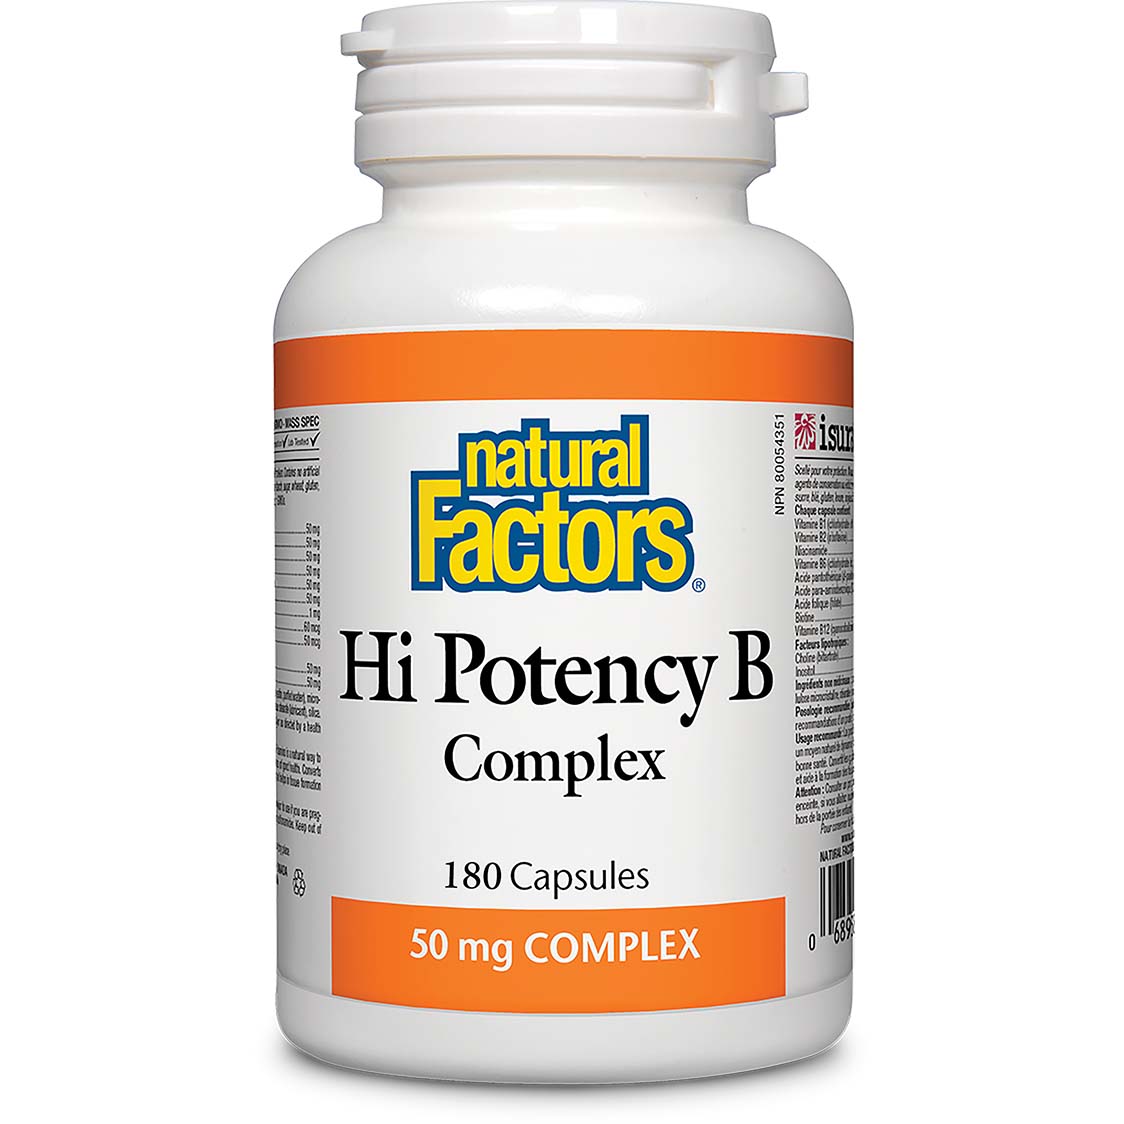 Natural Factors Hi Potency B Complex 180 Capsules 50 mg